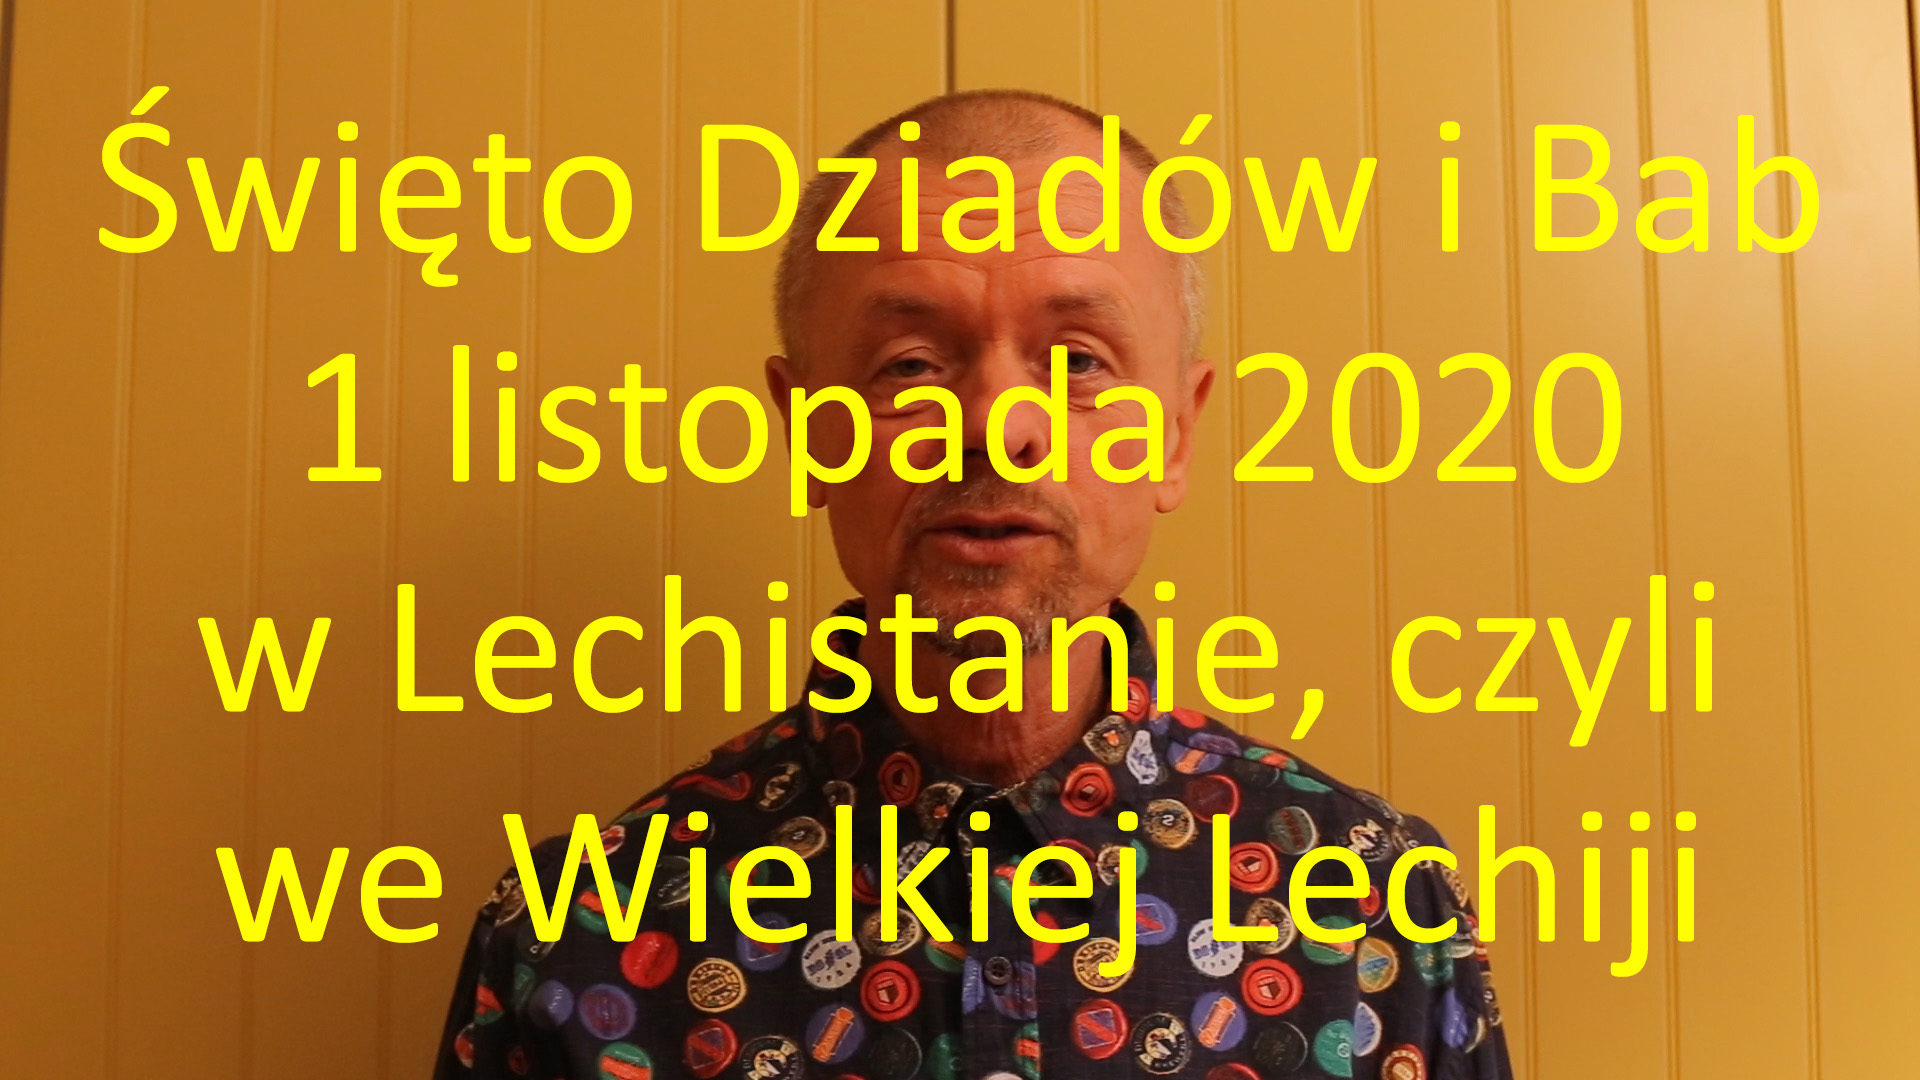 Słowianie i ukryta historia Polski - Święto Dziadów i Bab 1 listopada 2020 w Lechistanie, czyli w Wielkiej Lechii - film MEM.jpg